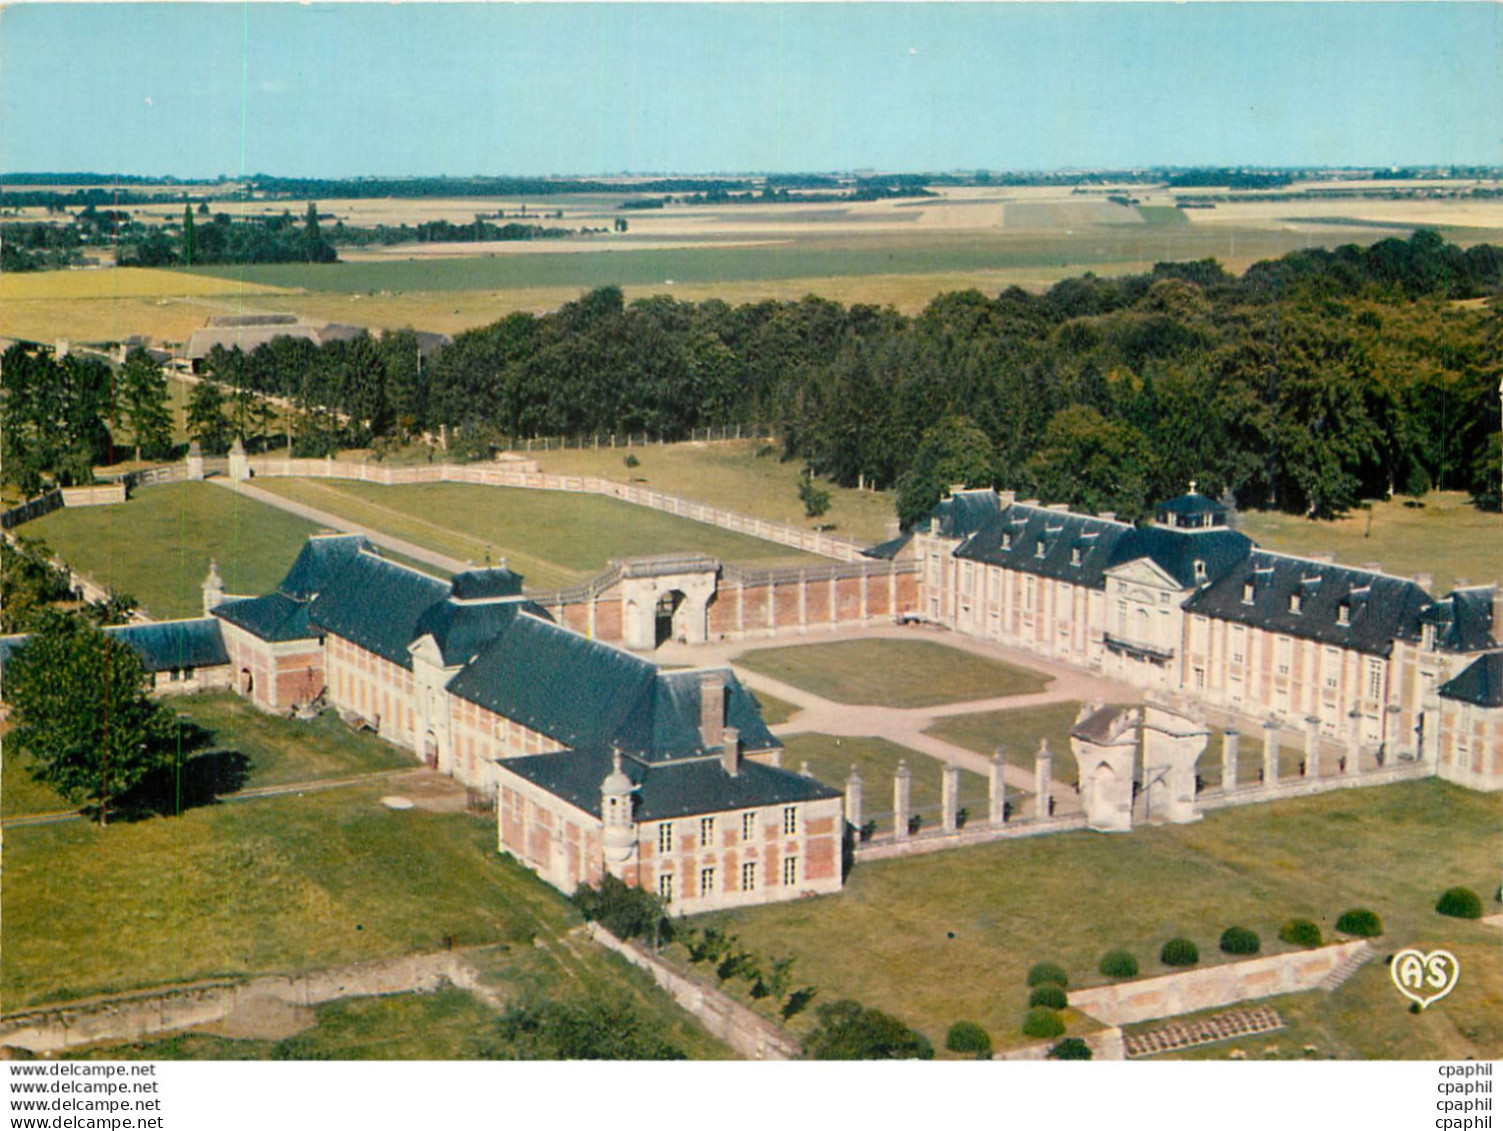 CPM Manoir Normand Le Neubourg (Eure) Le Chateau Du Champ De Bataille - Le Manoir